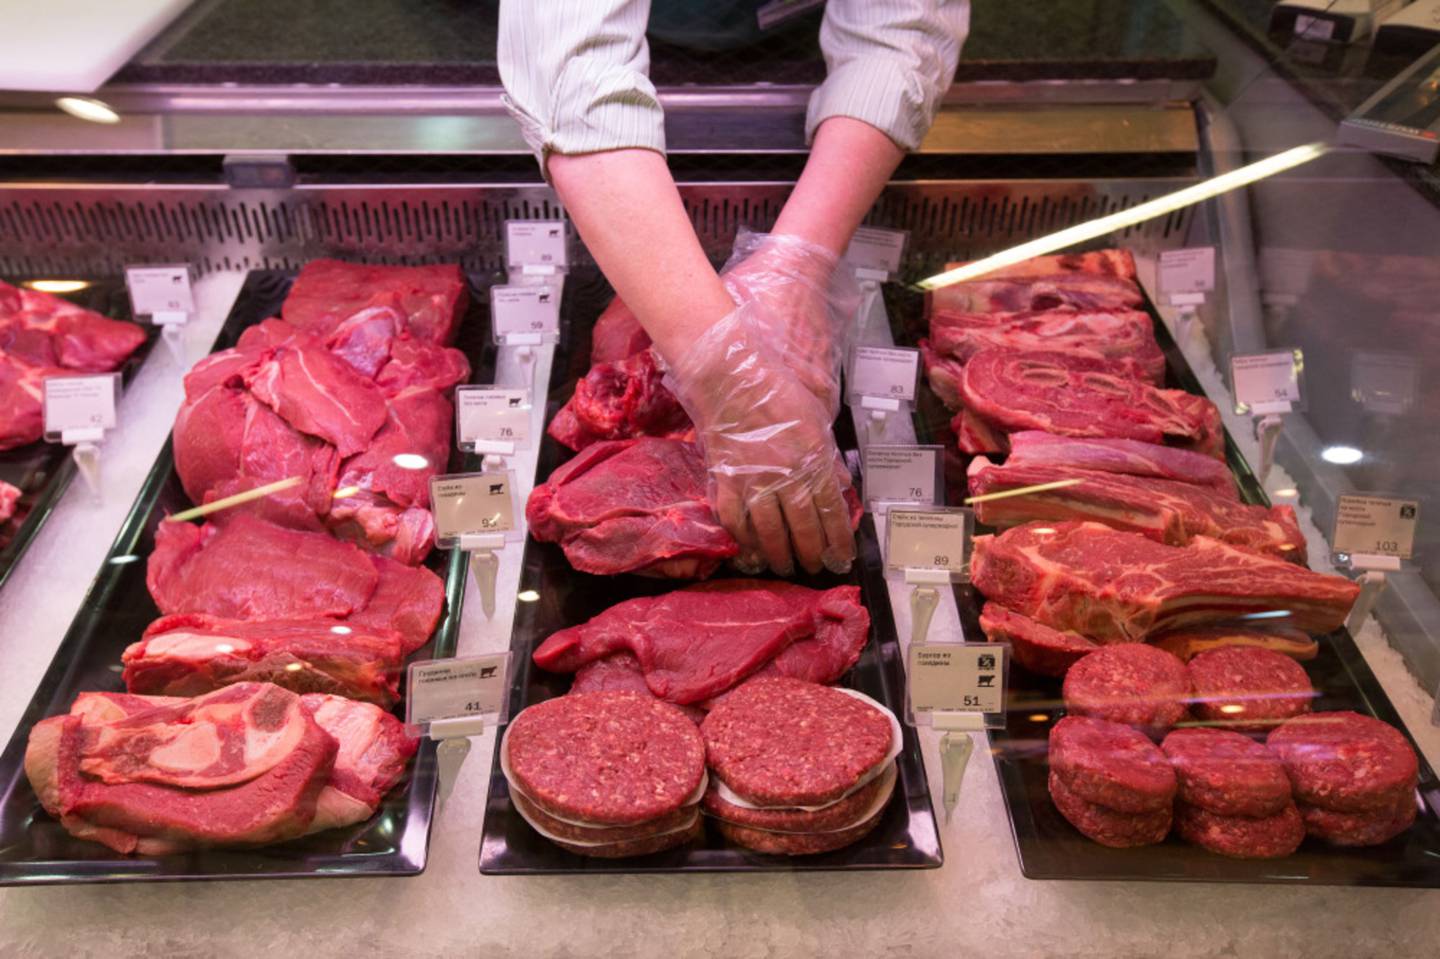 Un trabajador organiza cortes de carne para exhibirlos en un supermercado.